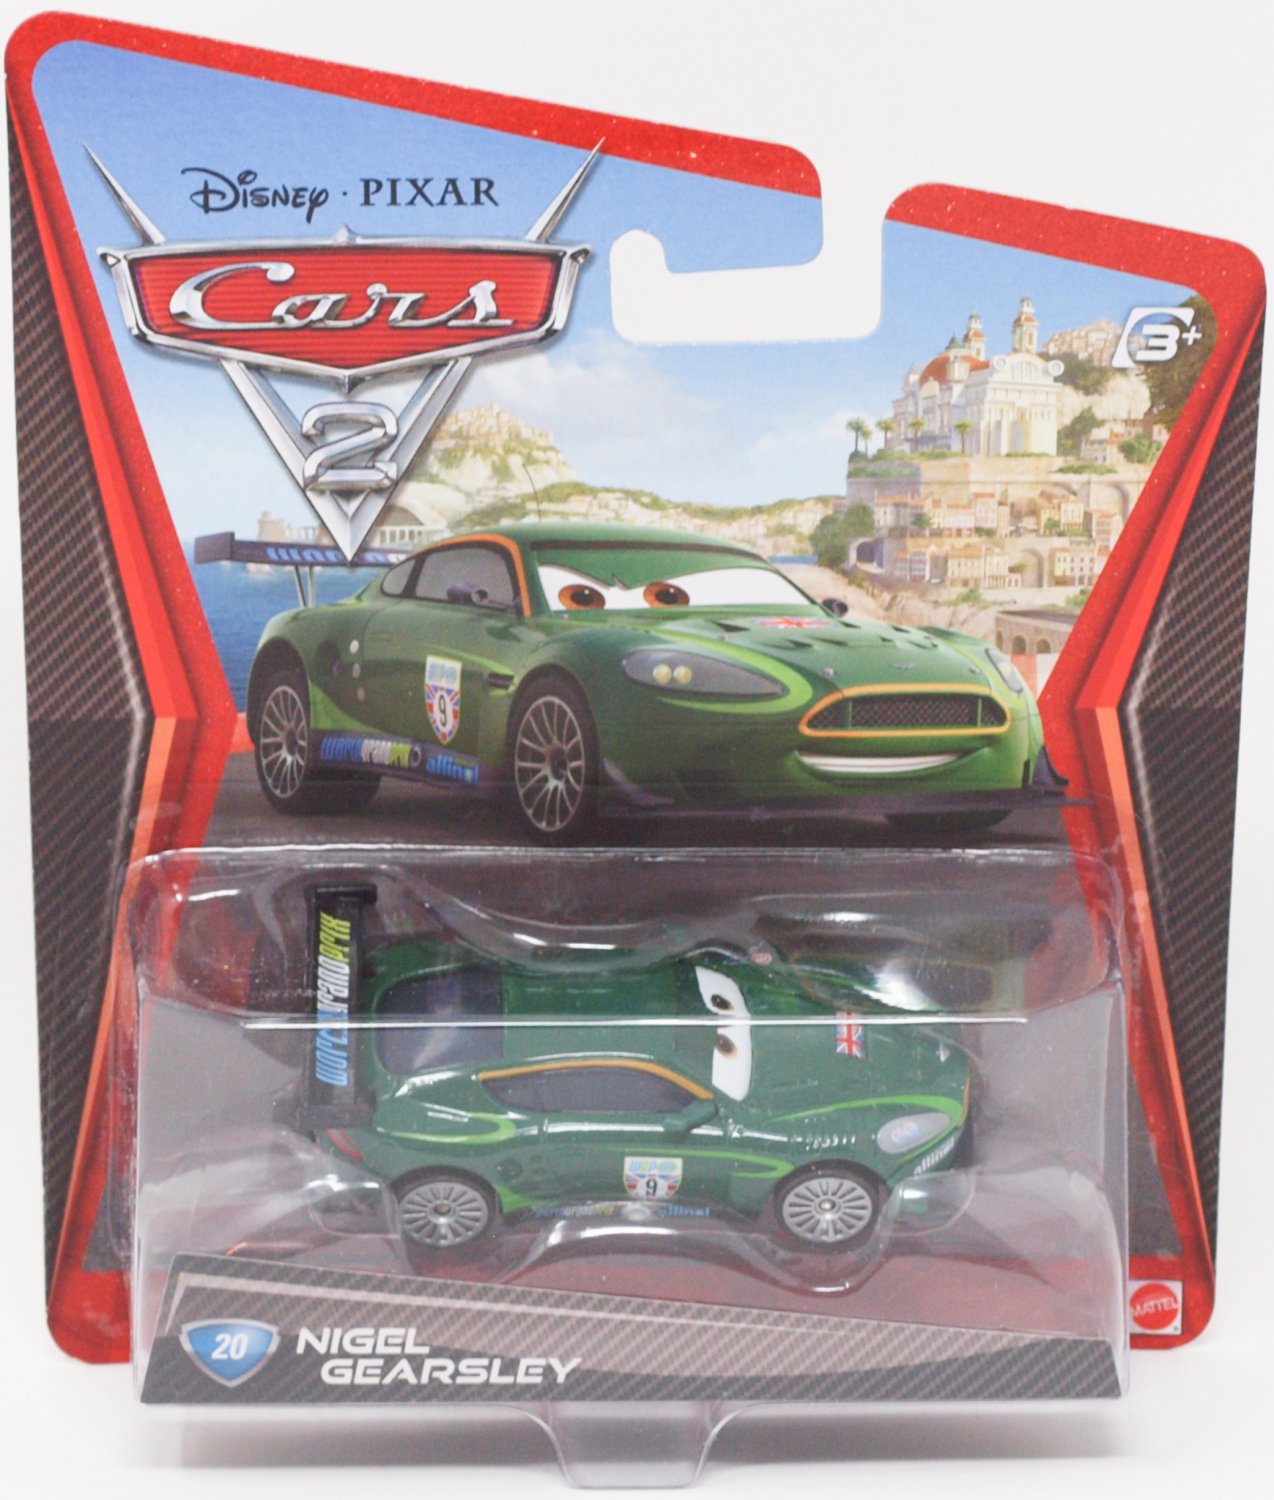 Disney PIXAR Cars 2 Movie #20 Nigel Gearsley Diecast Scale 1:55 Racer ...